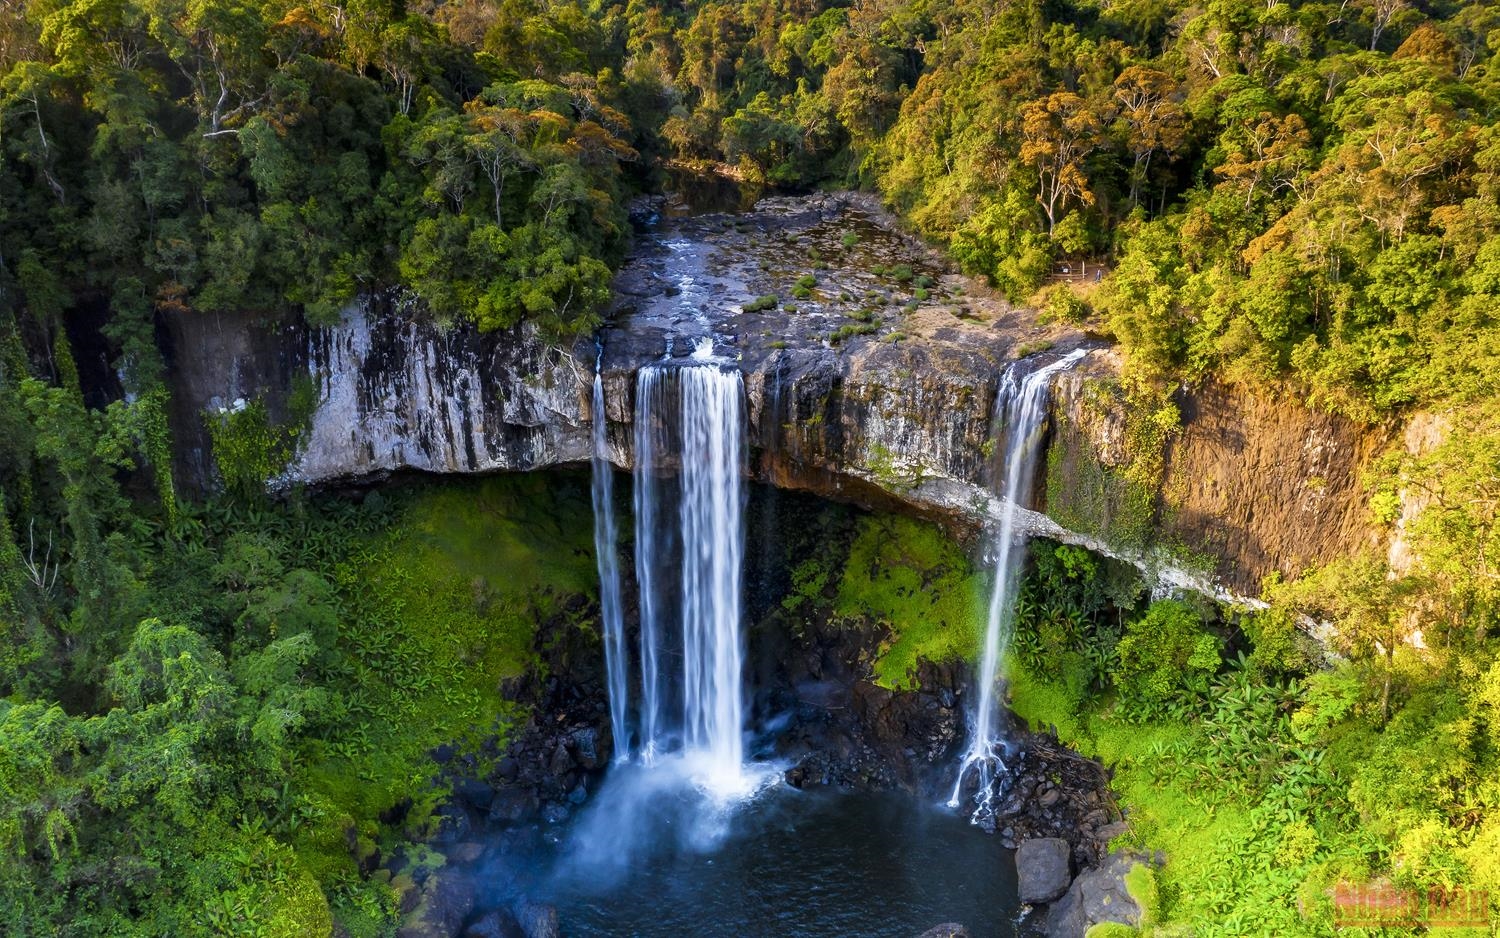 Là một trong những thác nước đẹp nhất của Tây Nguyên, mệnh danh là “nàng tiên của rừng thiêng”, thác K50 nằm nơi đầu nguồn sông Côn, ở phần giáp ranh giữa Gia Lai và Bình Định, thuộc huyện Kbang (Gia Lai), cách trung tâm thành phố Pleiku khoảng 80km